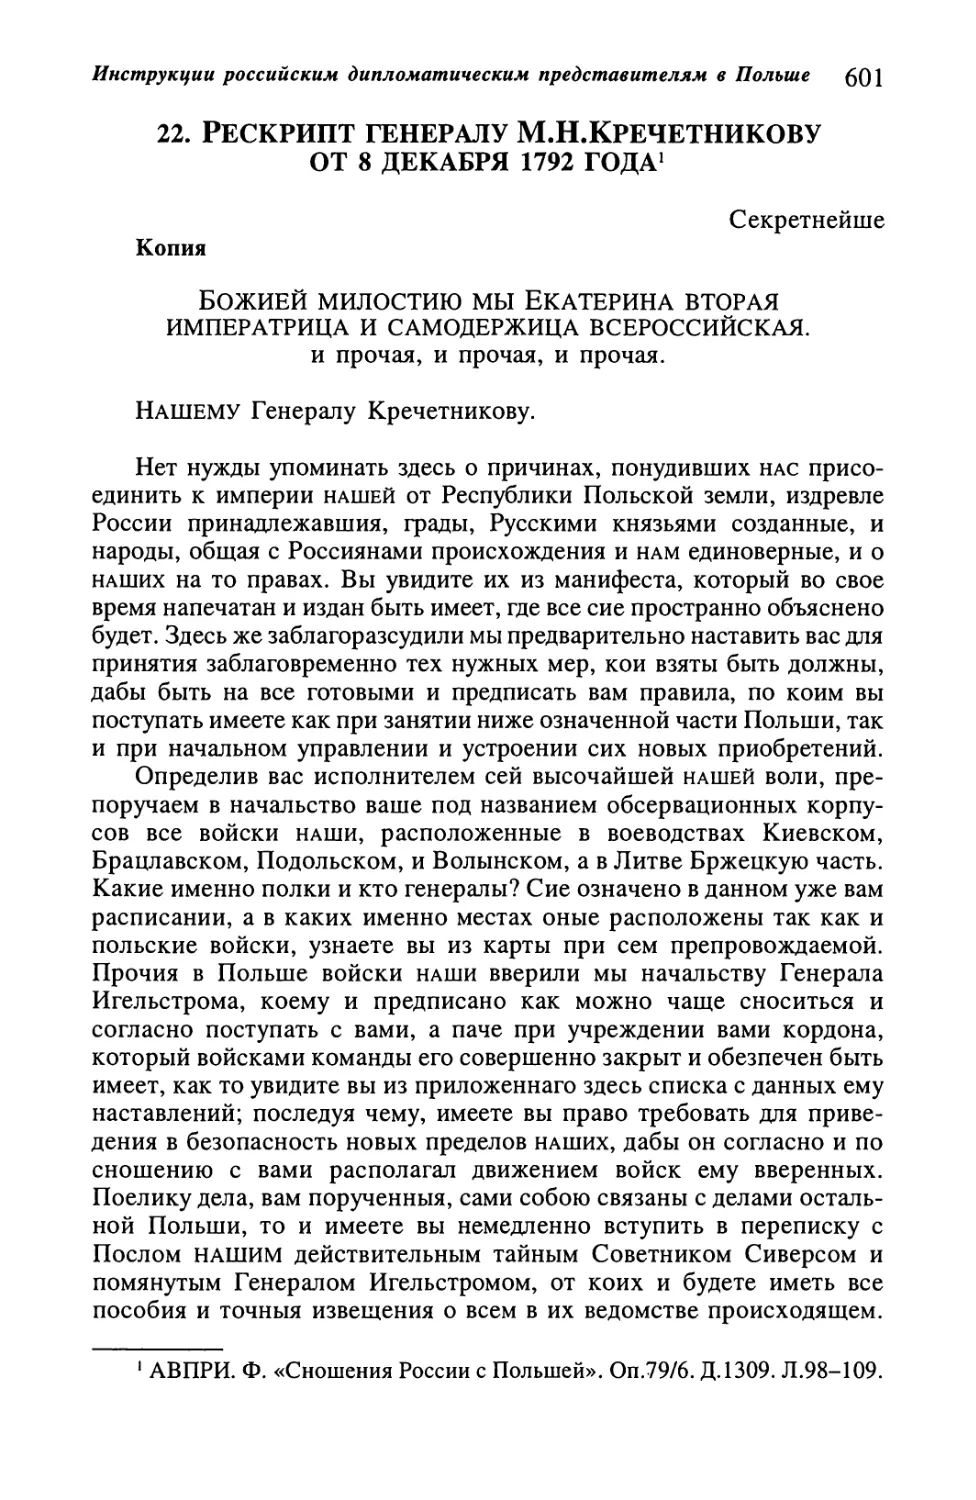 22. Рескрипт генералу М.Н.Кречетникову от 8 декабря 1792 года